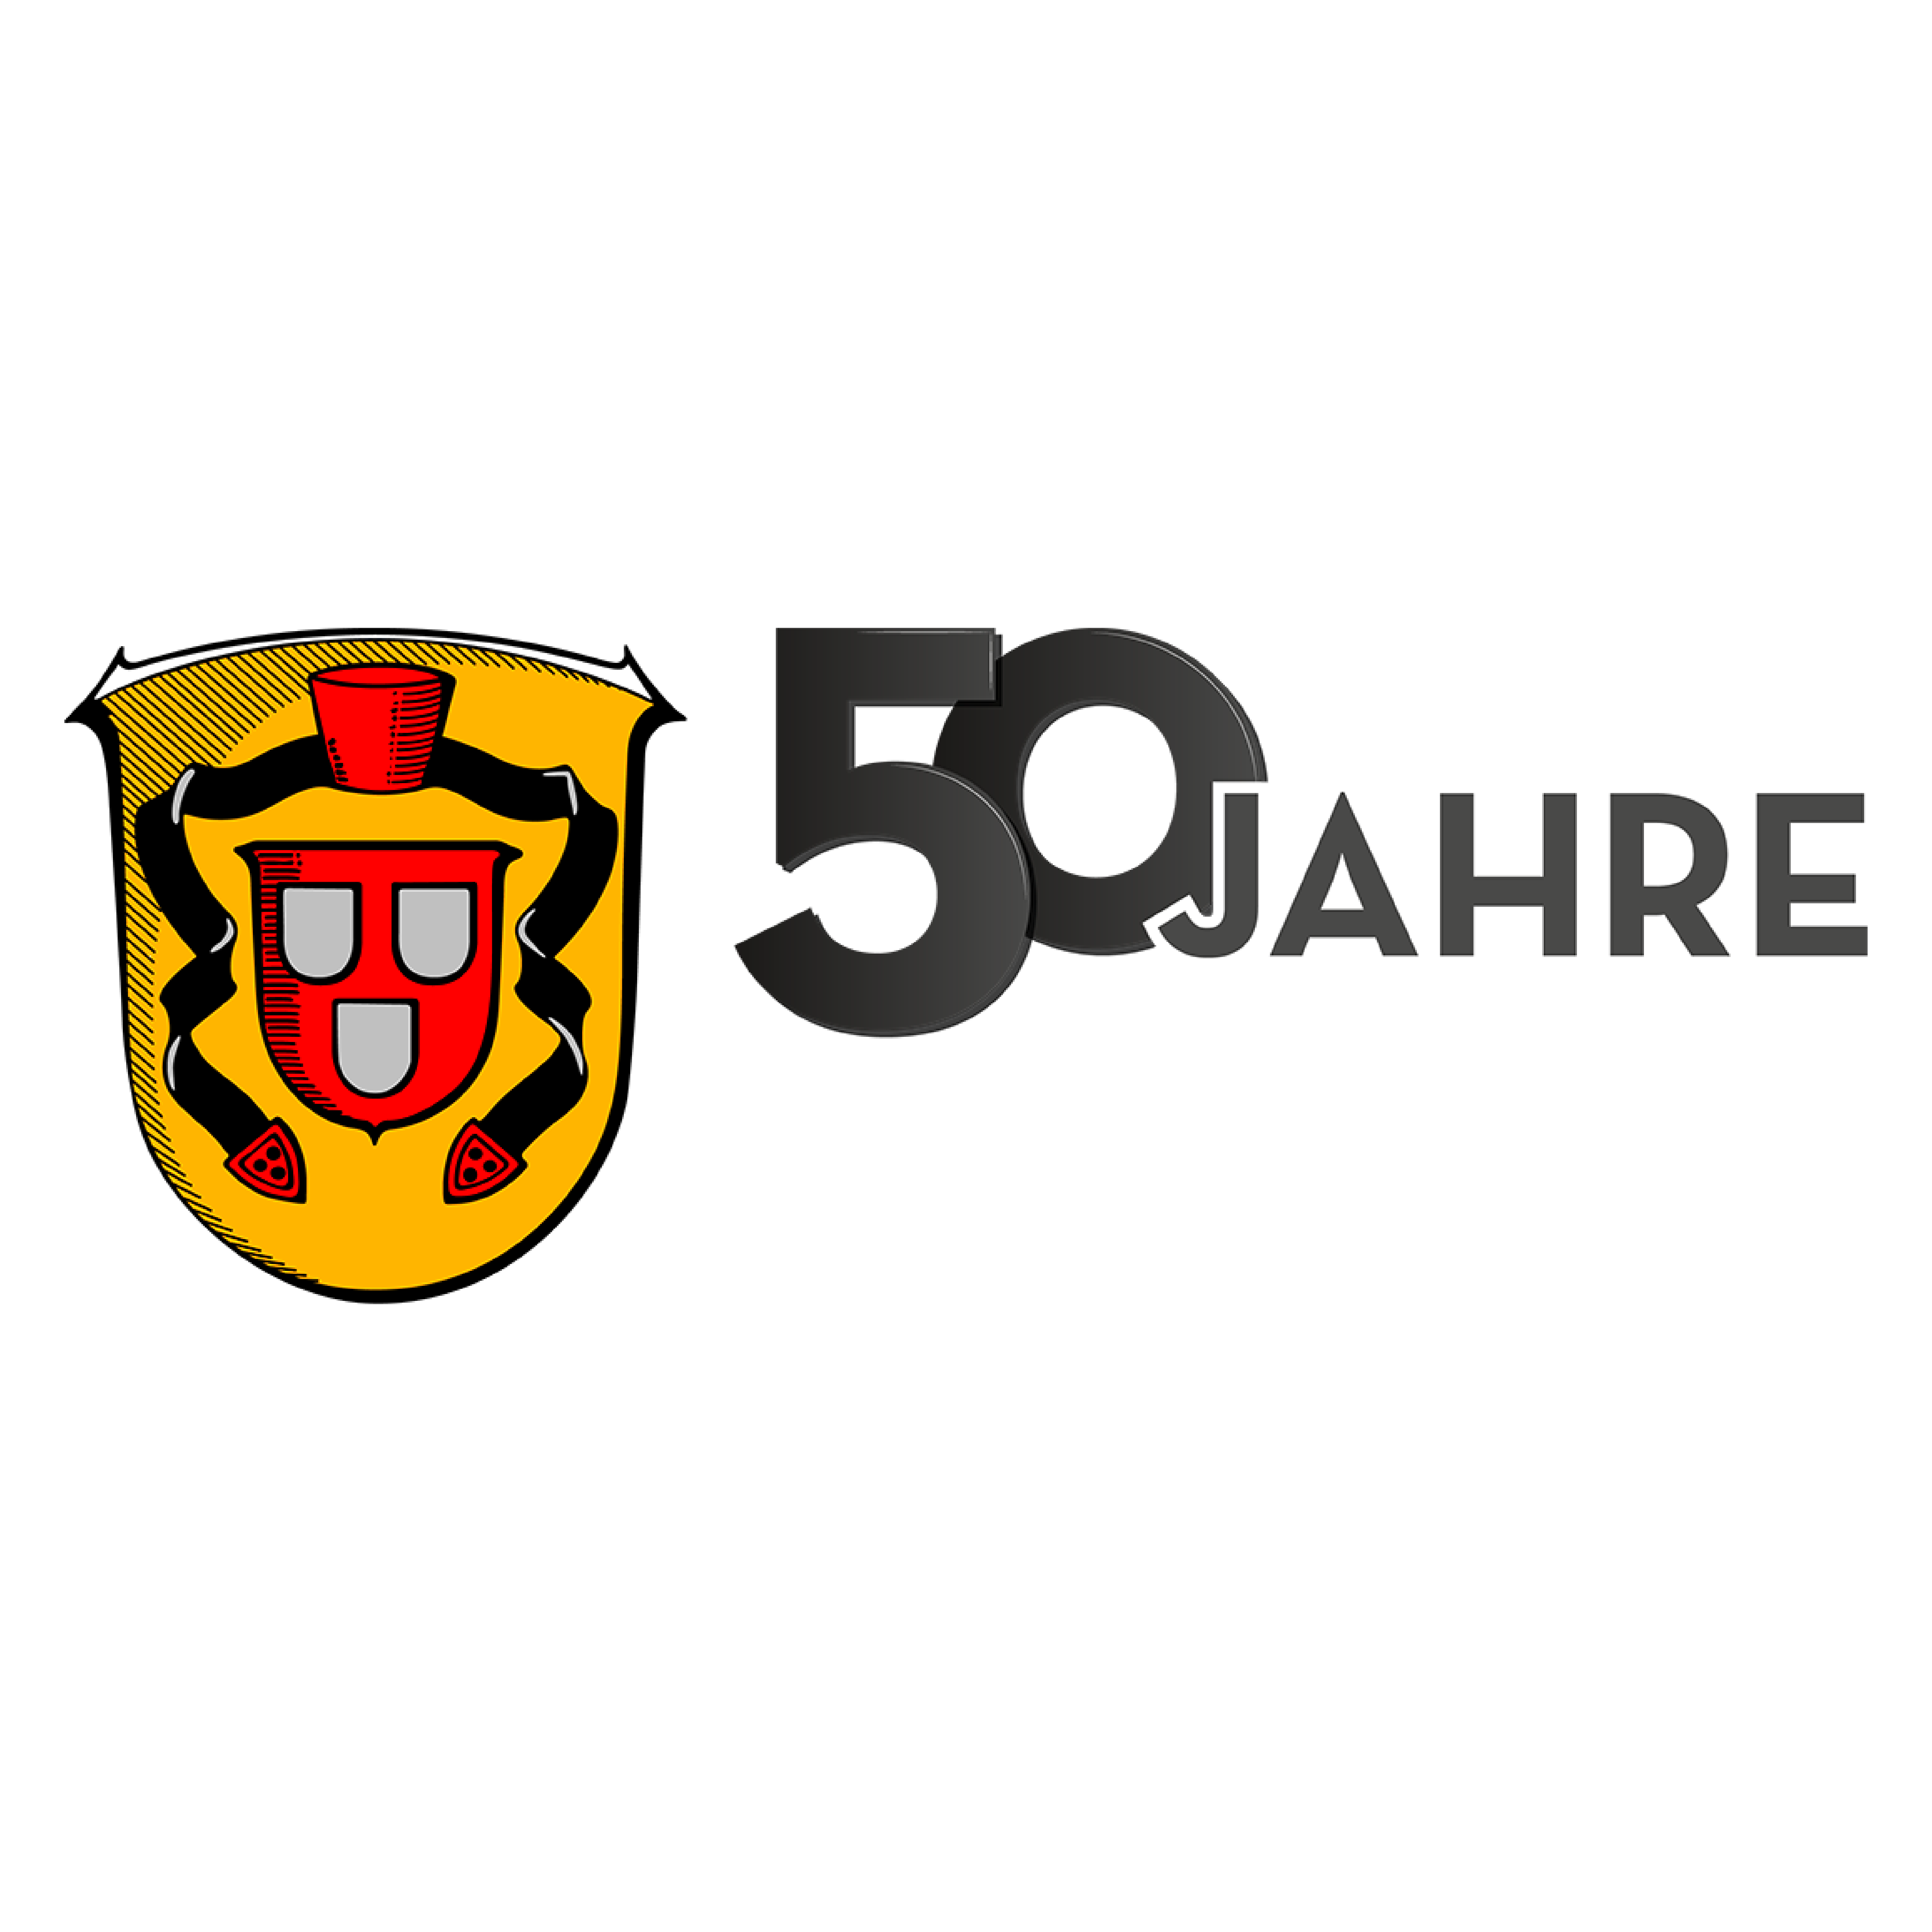 50 Jahre Gemeinde Willingshausen Logo